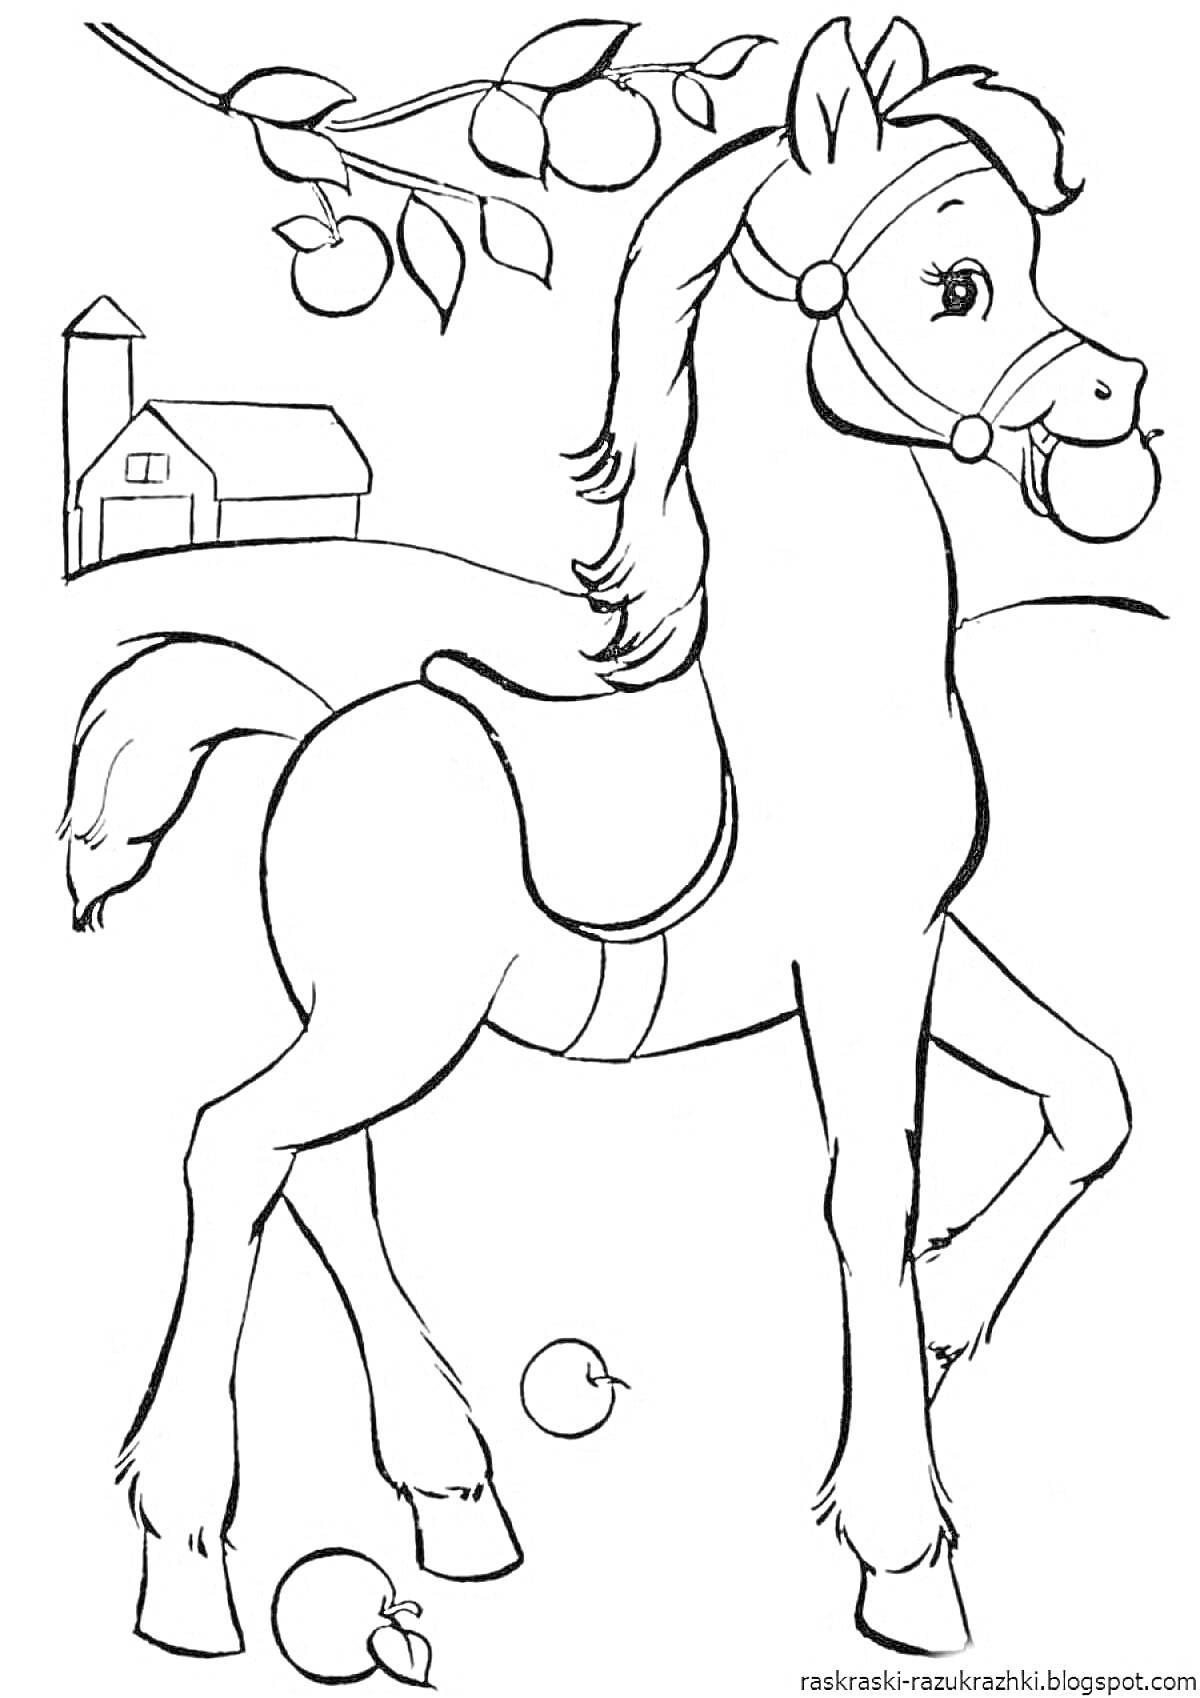 Раскраска Лошадь с яблоками на ферме